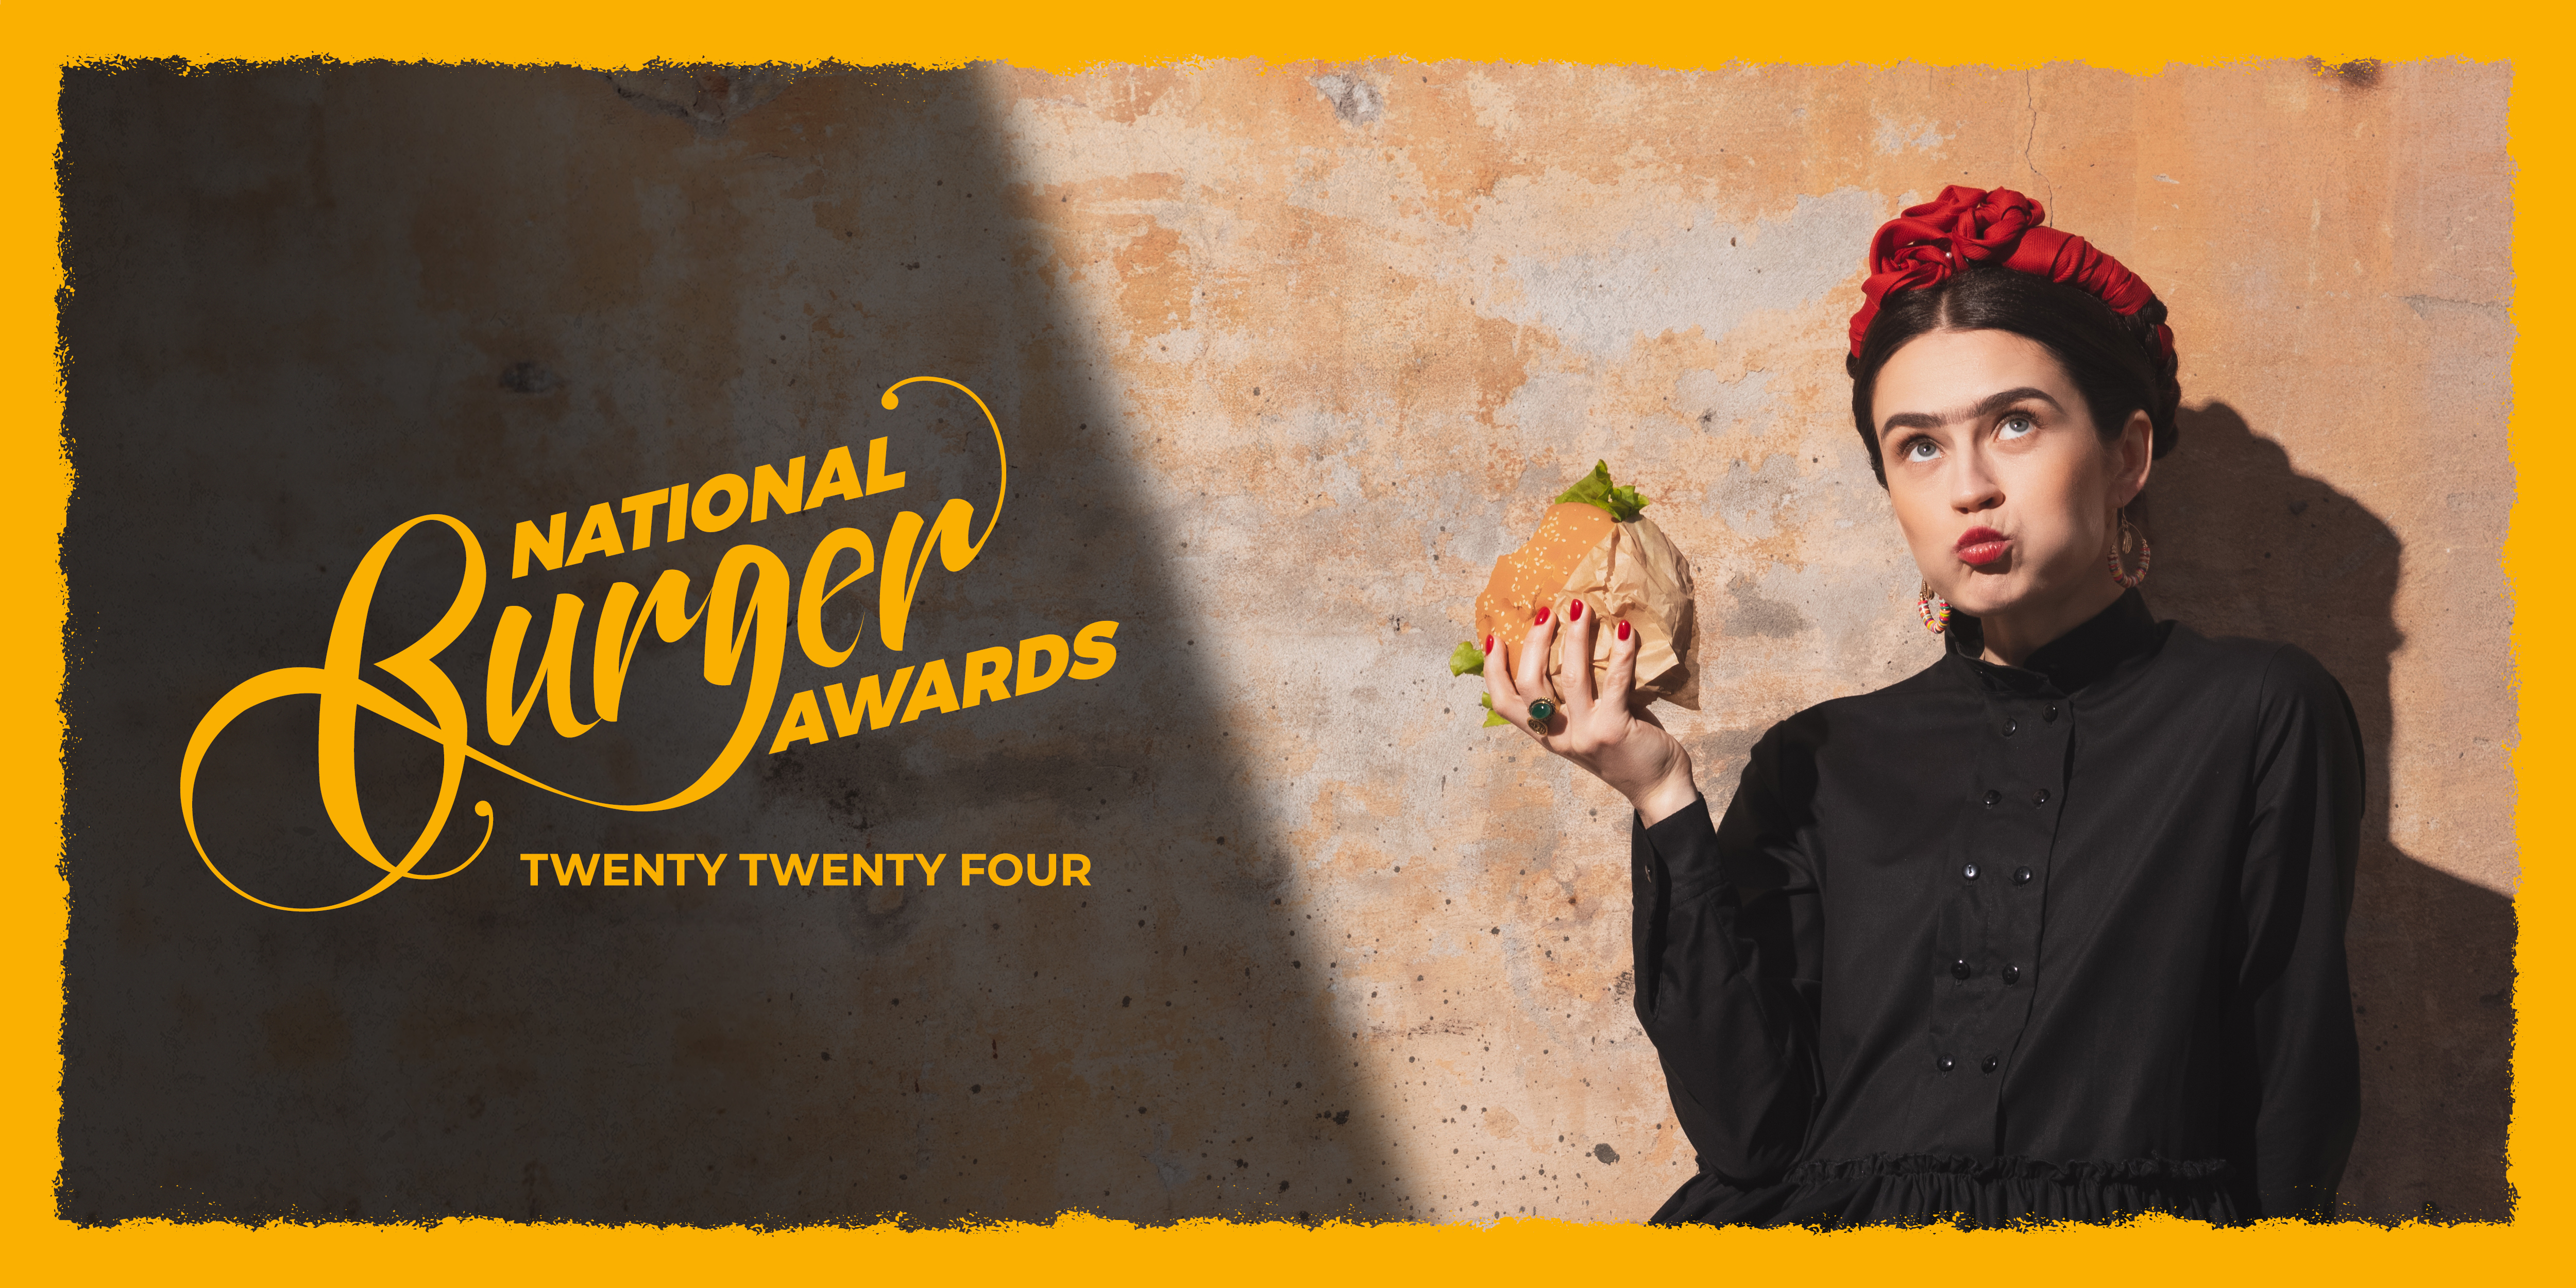 National Burger Awards